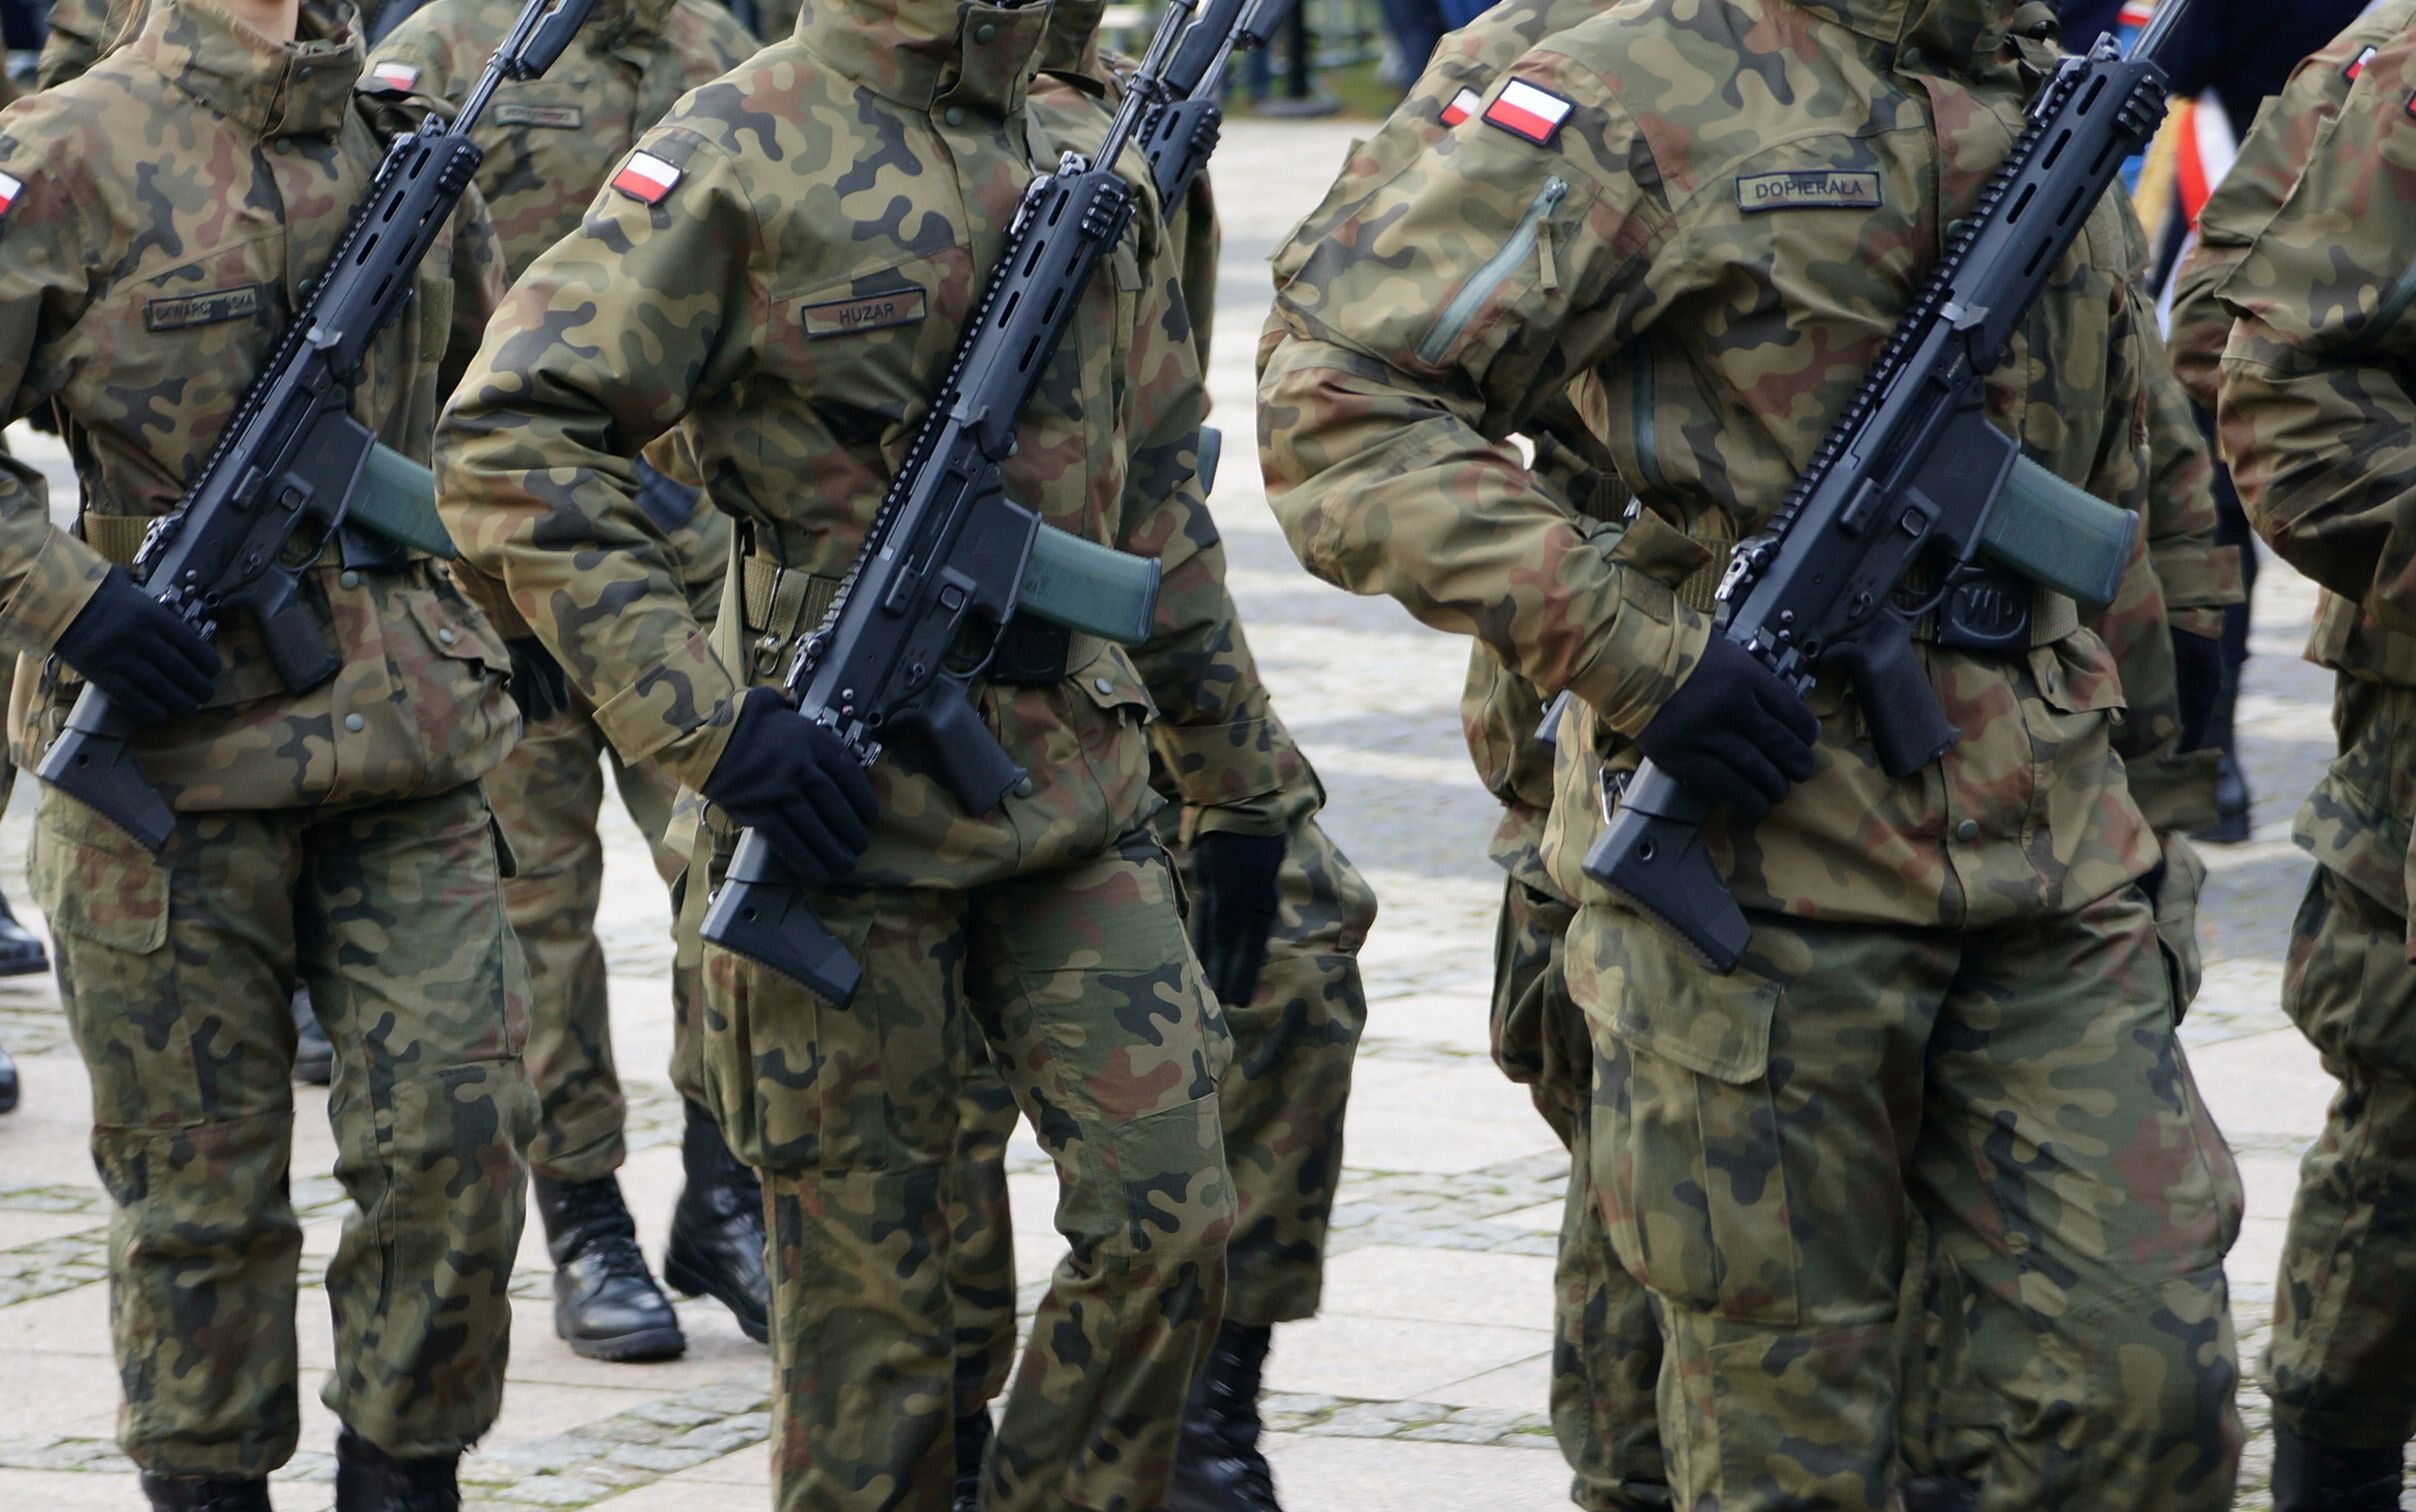 wielka afera w wojsku polskim. w tle nawet 300 mln złotych